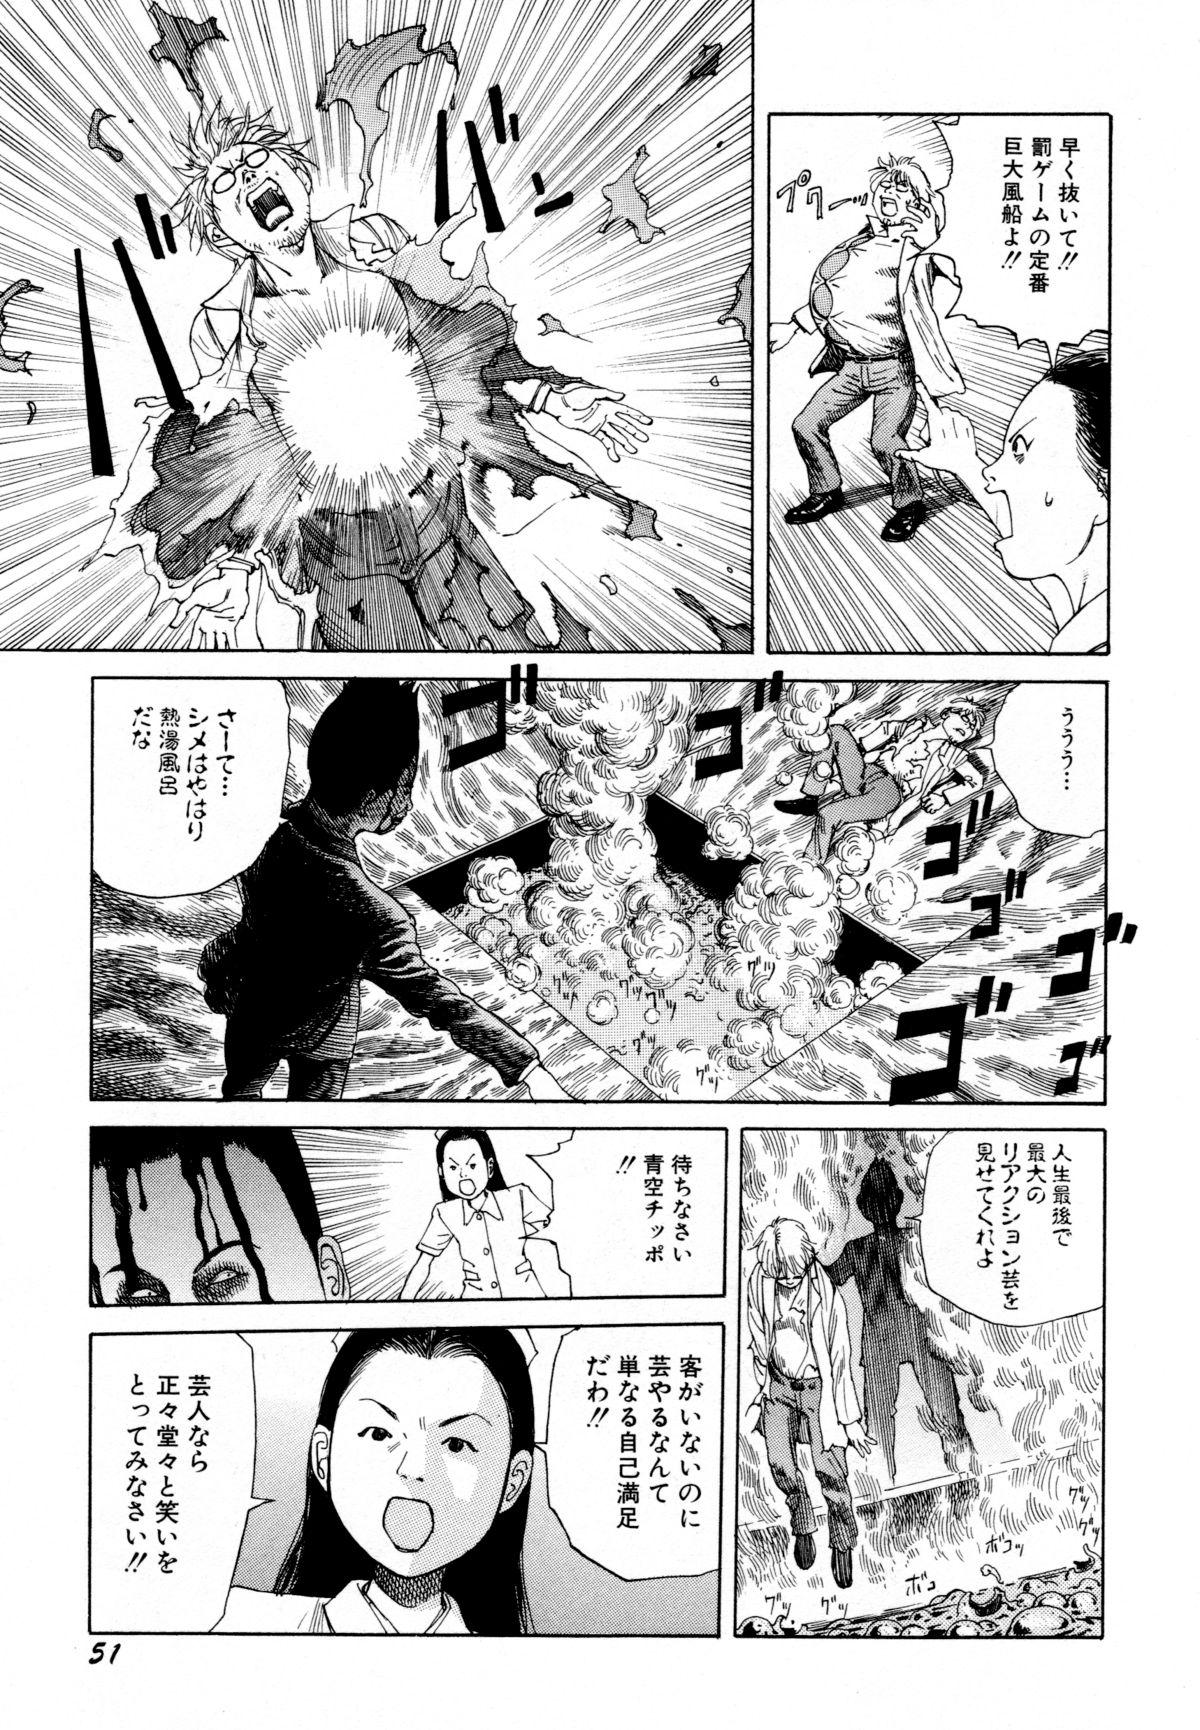 Arijigoku vs Barabara Shoujo - Antlion vs BaraBara Girl 53